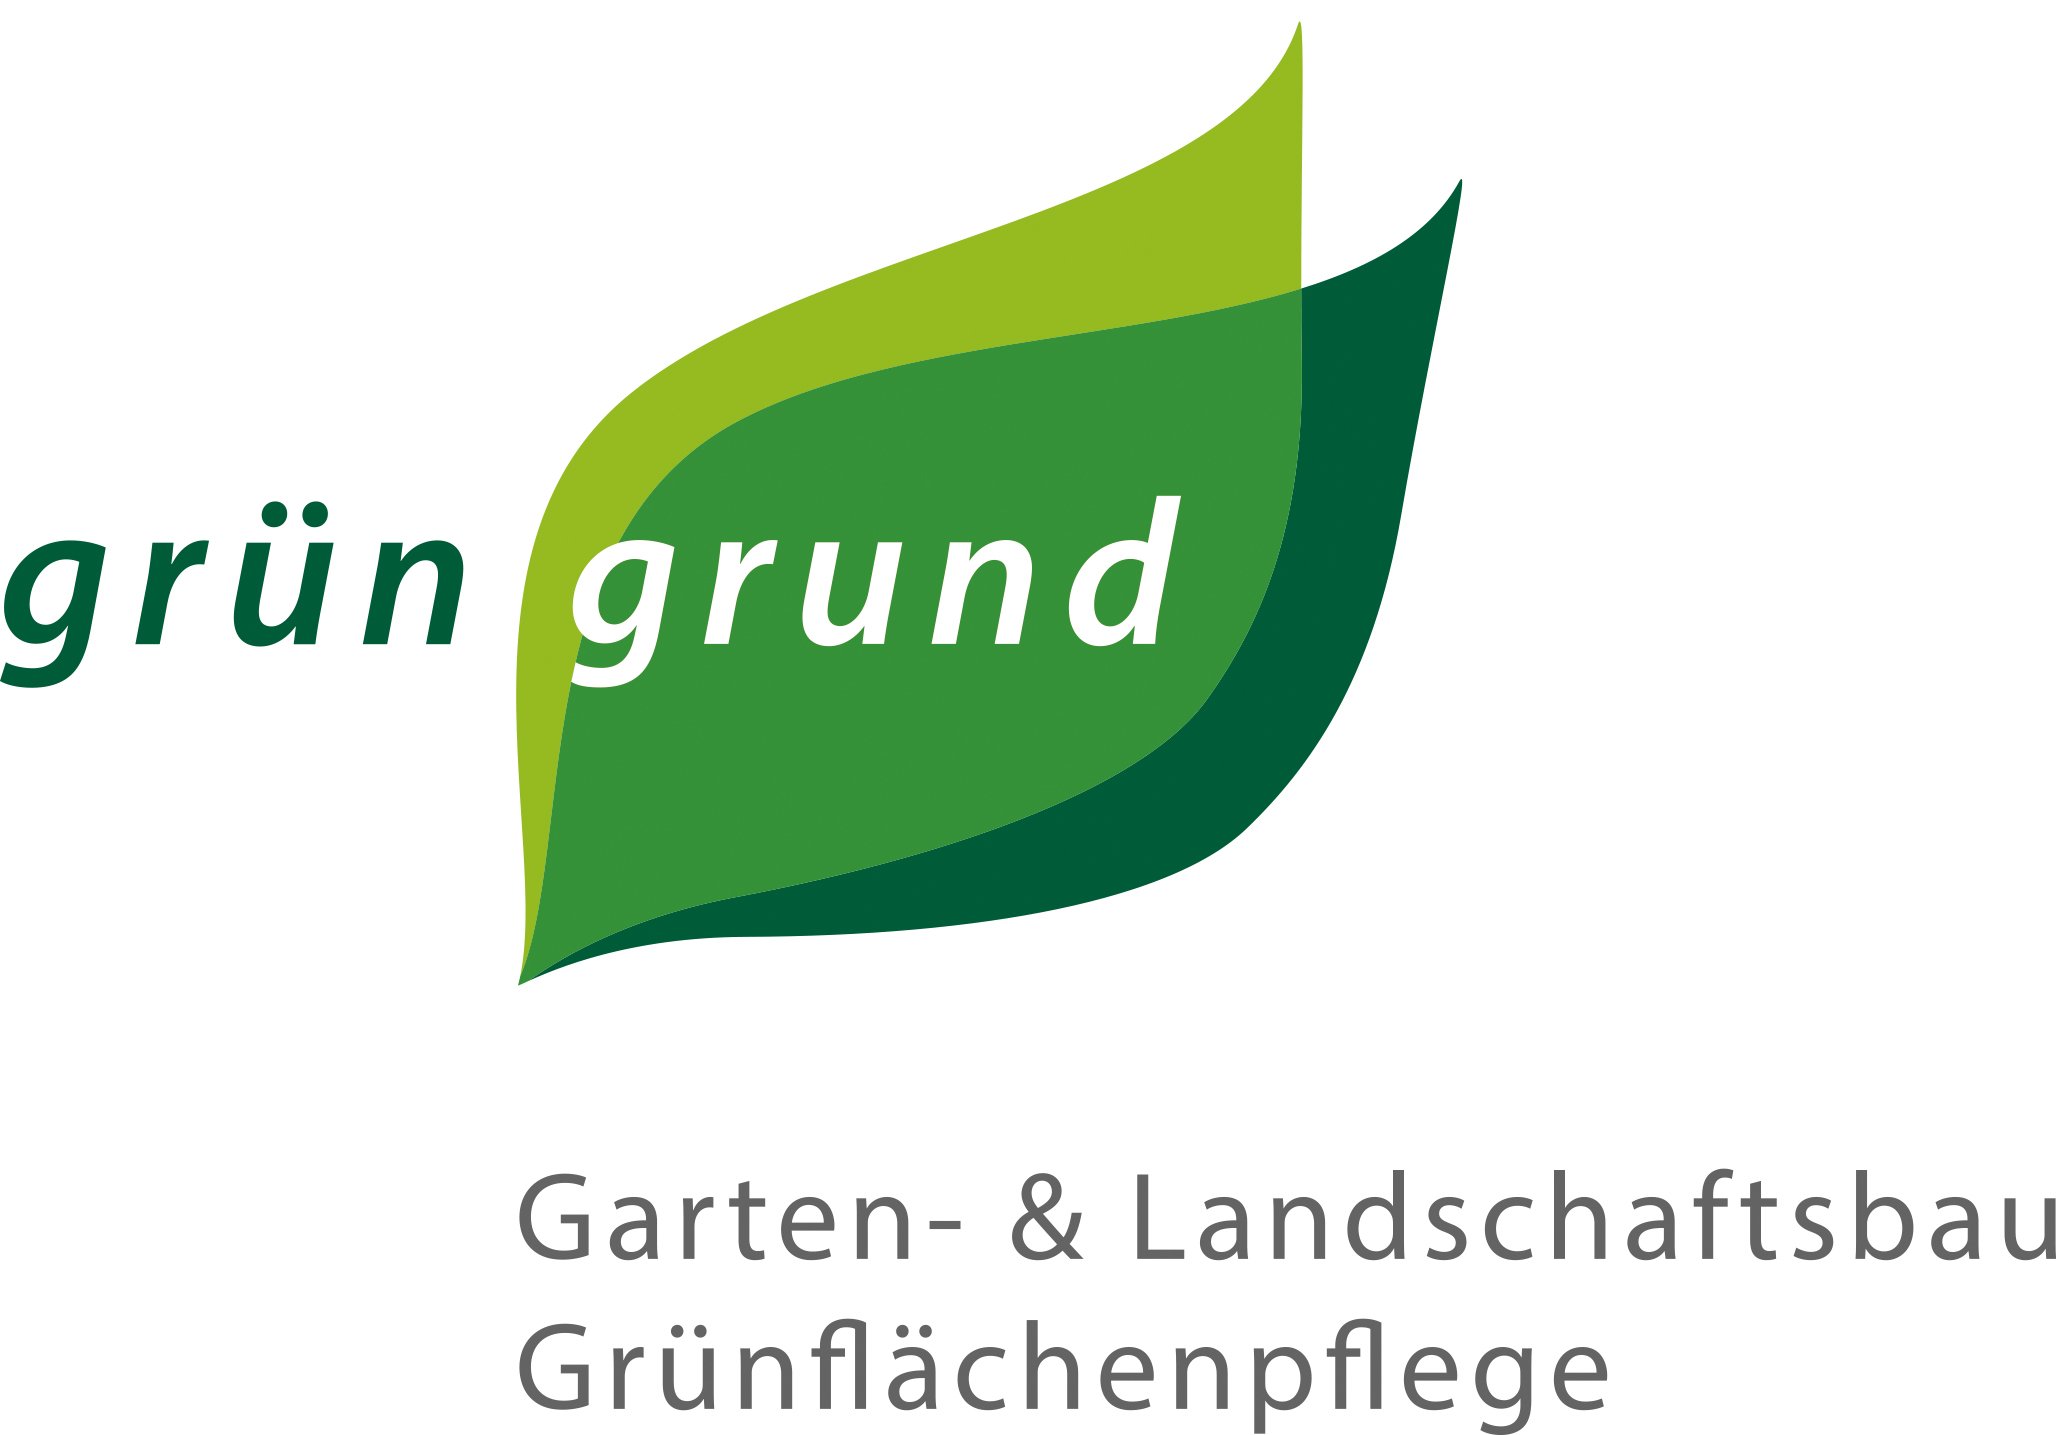 grüngrund_logo.jpg